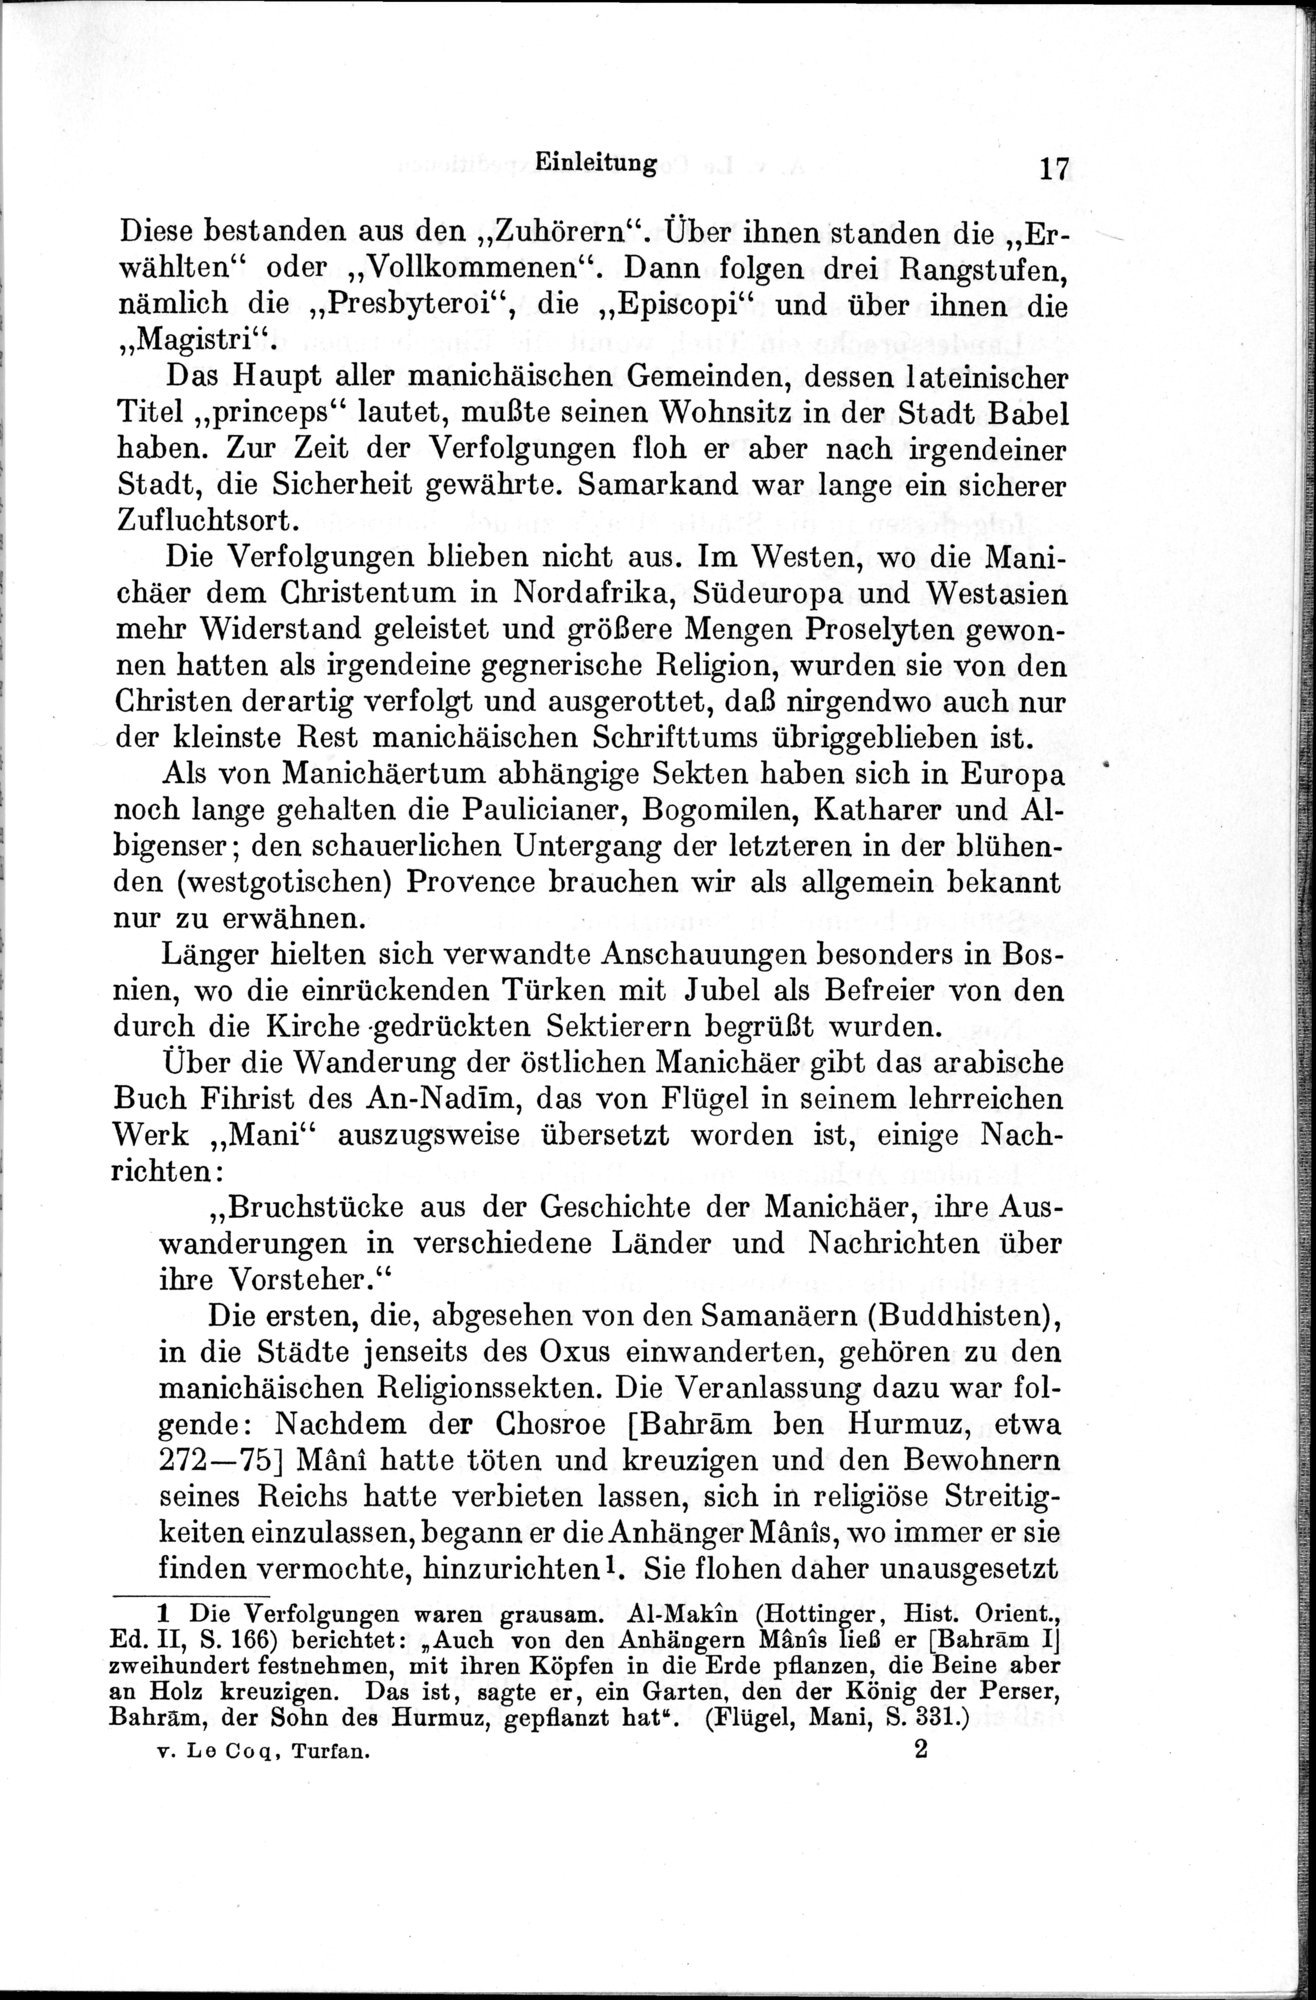 Auf Hellas Spuren in Ostturkistan : vol.1 / Page 33 (Grayscale High Resolution Image)